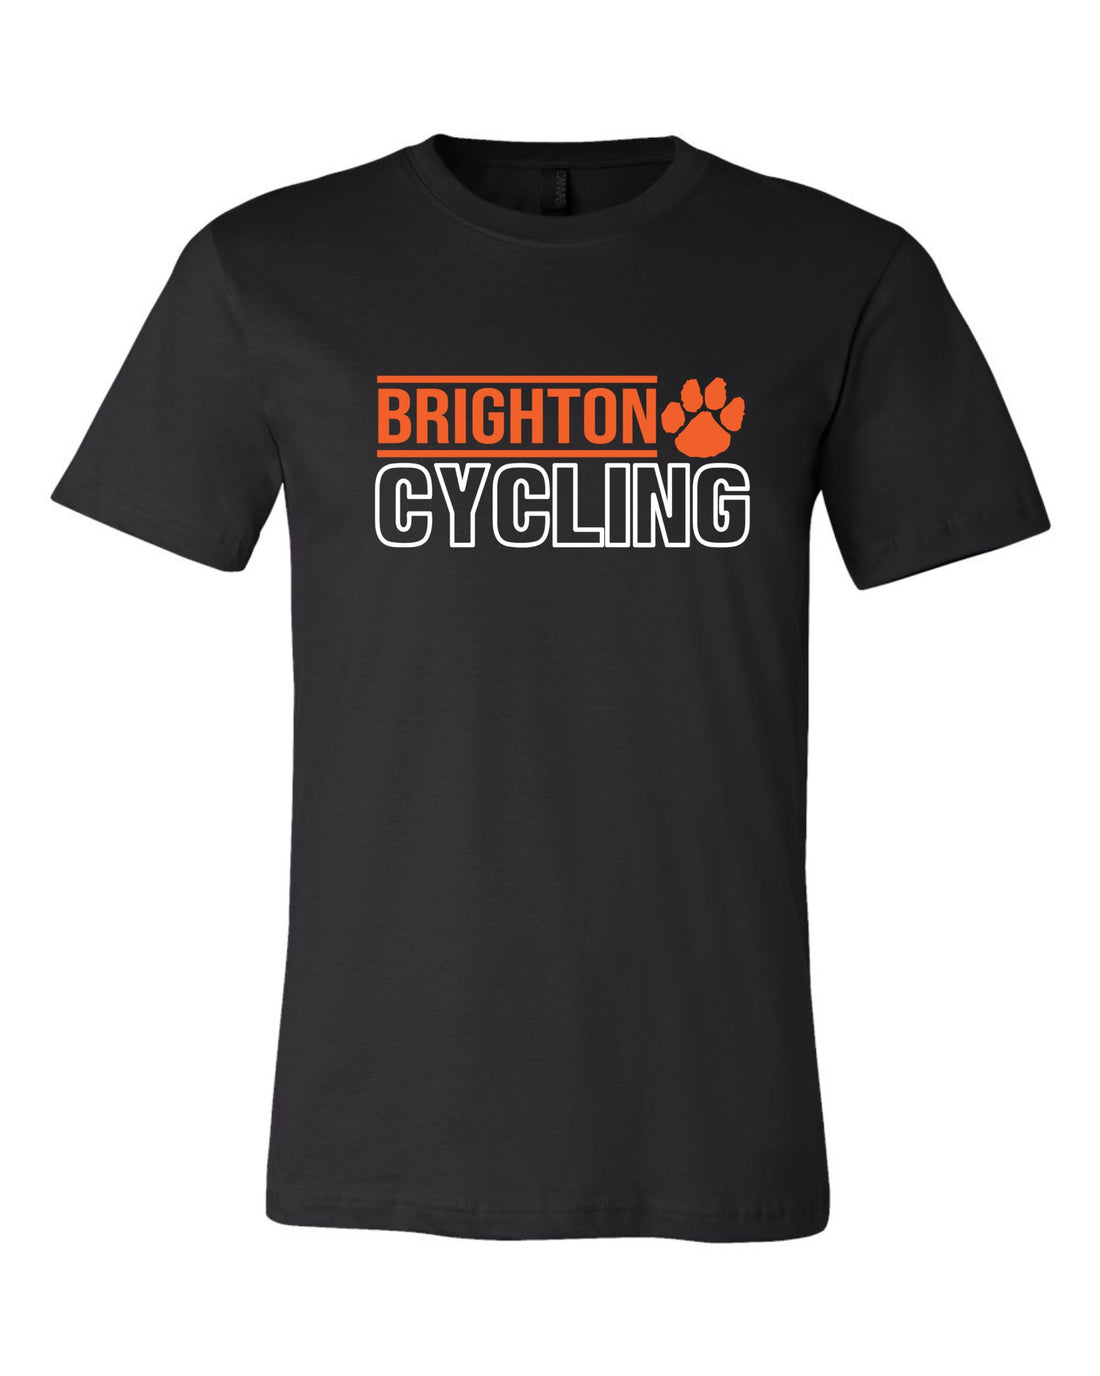 Brighton Cycling Premium Cotton Tee